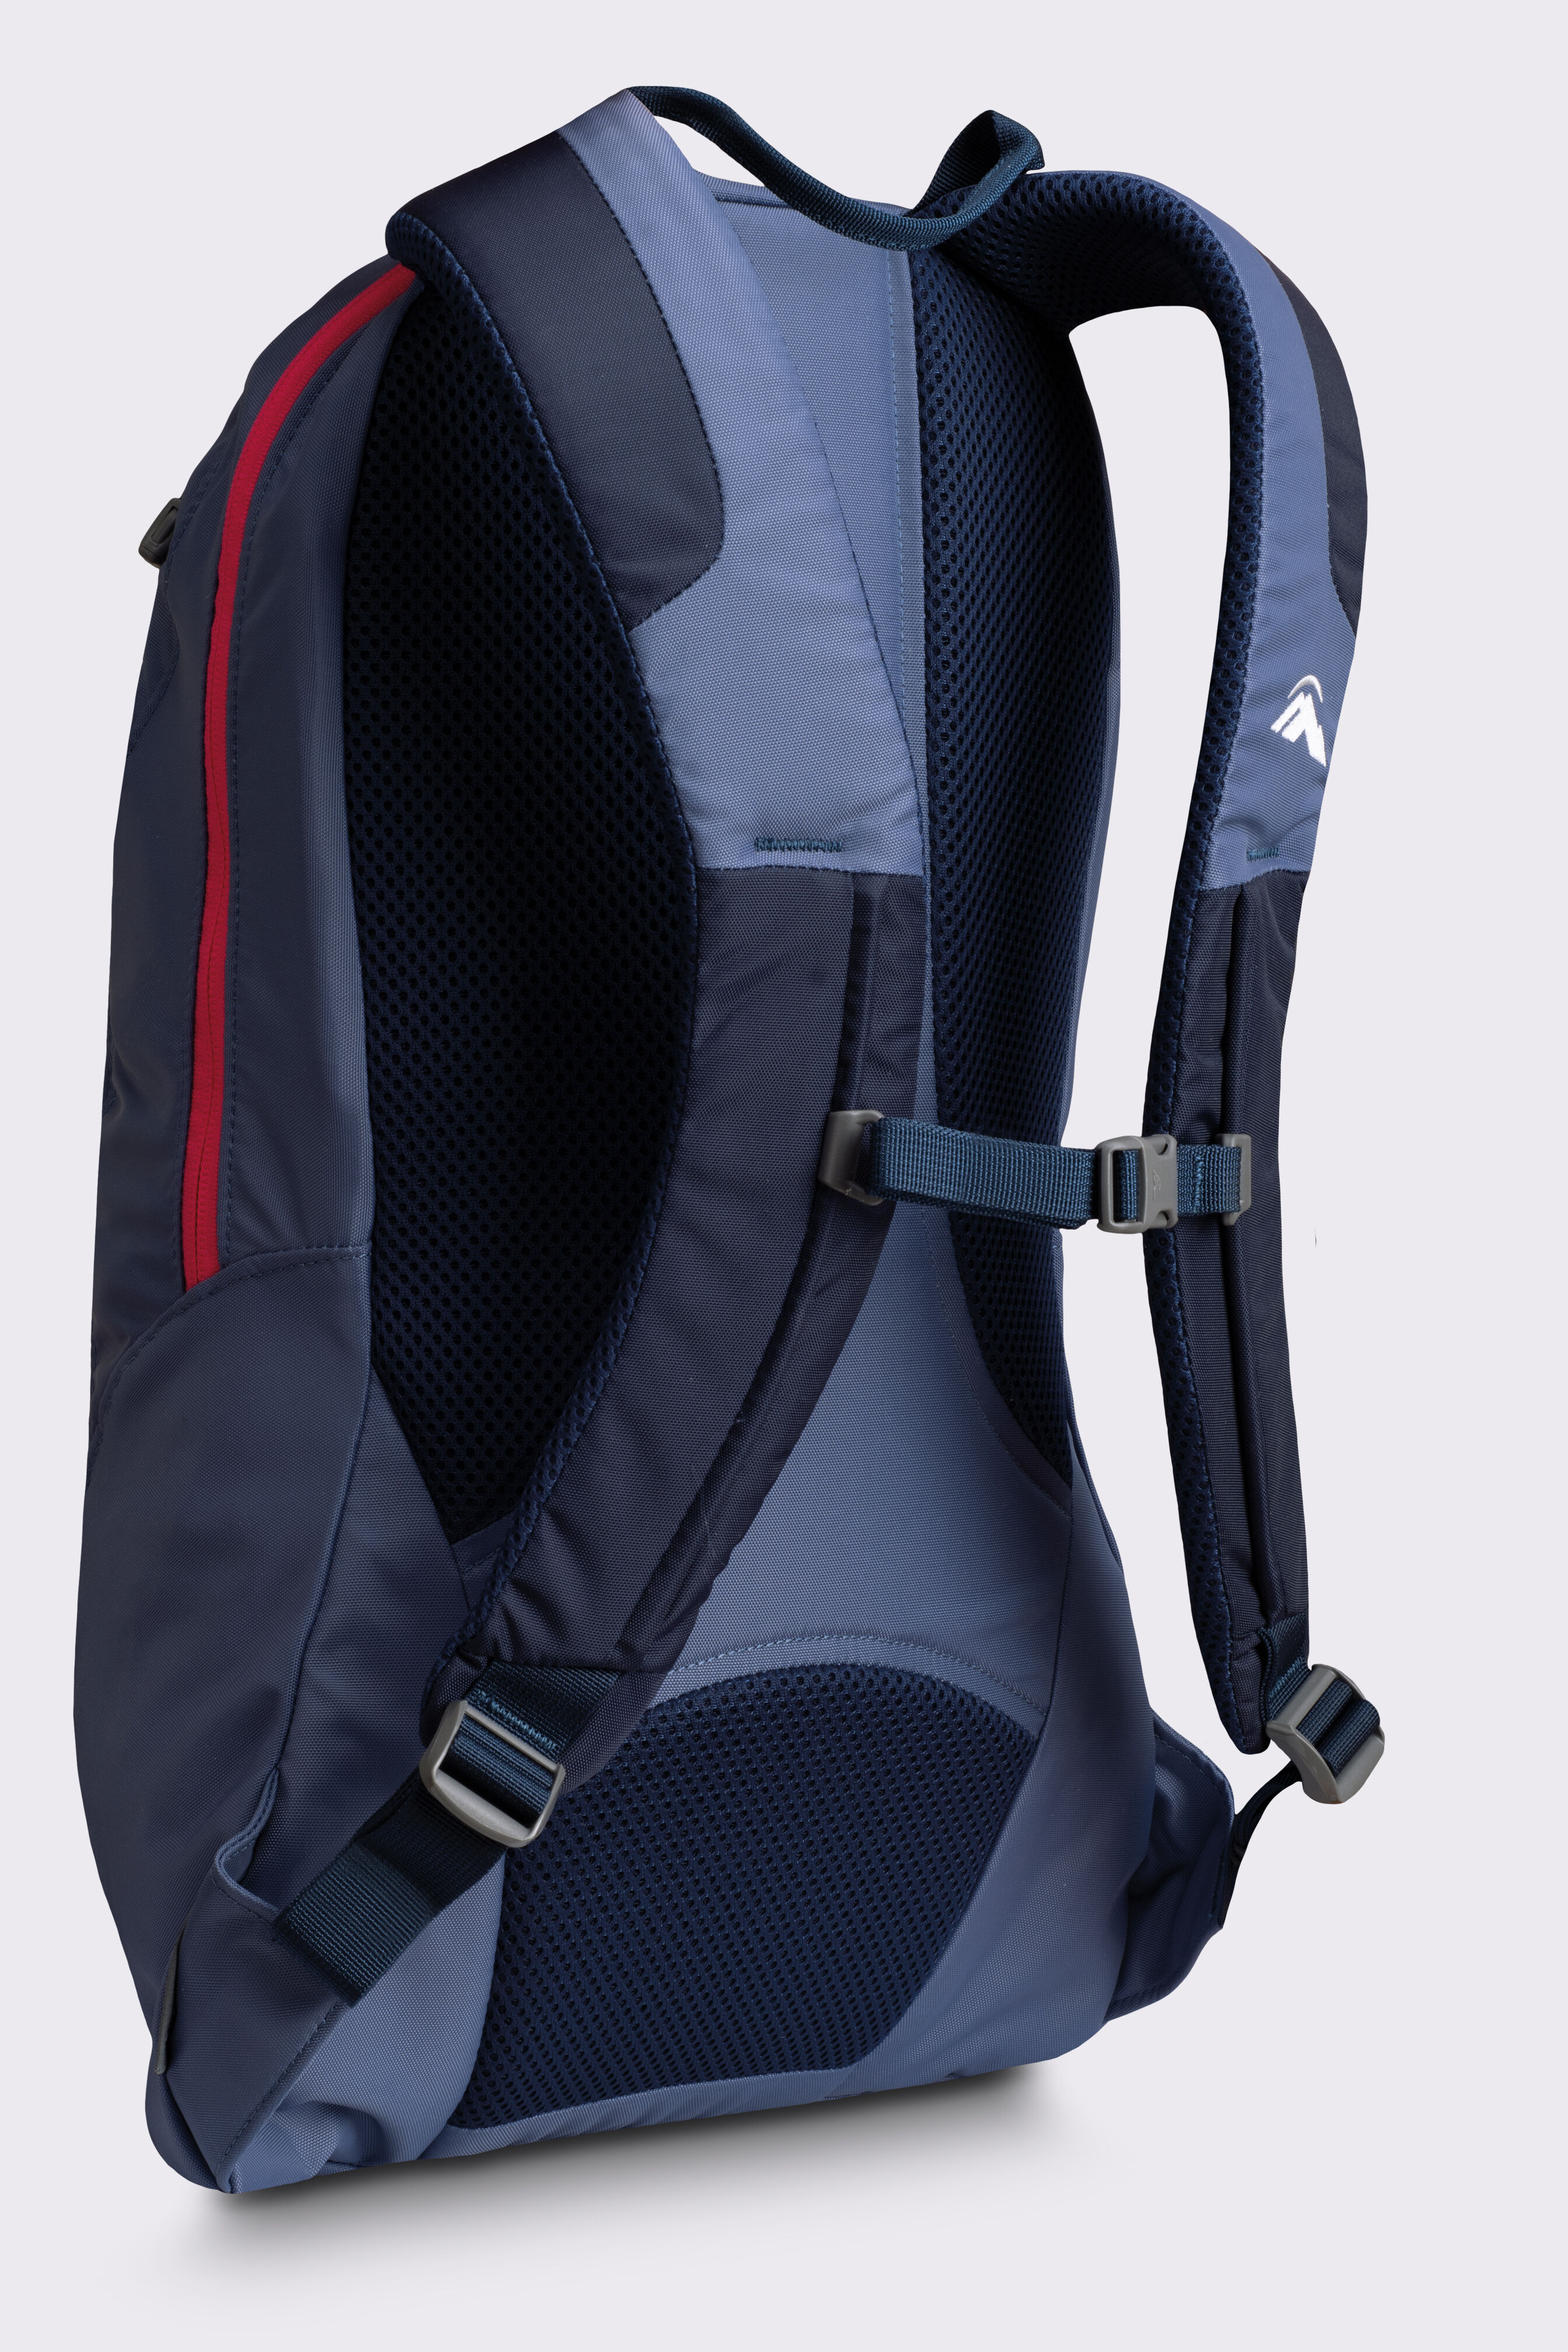 Macpac Kahuna 1.1 18L Backpack 